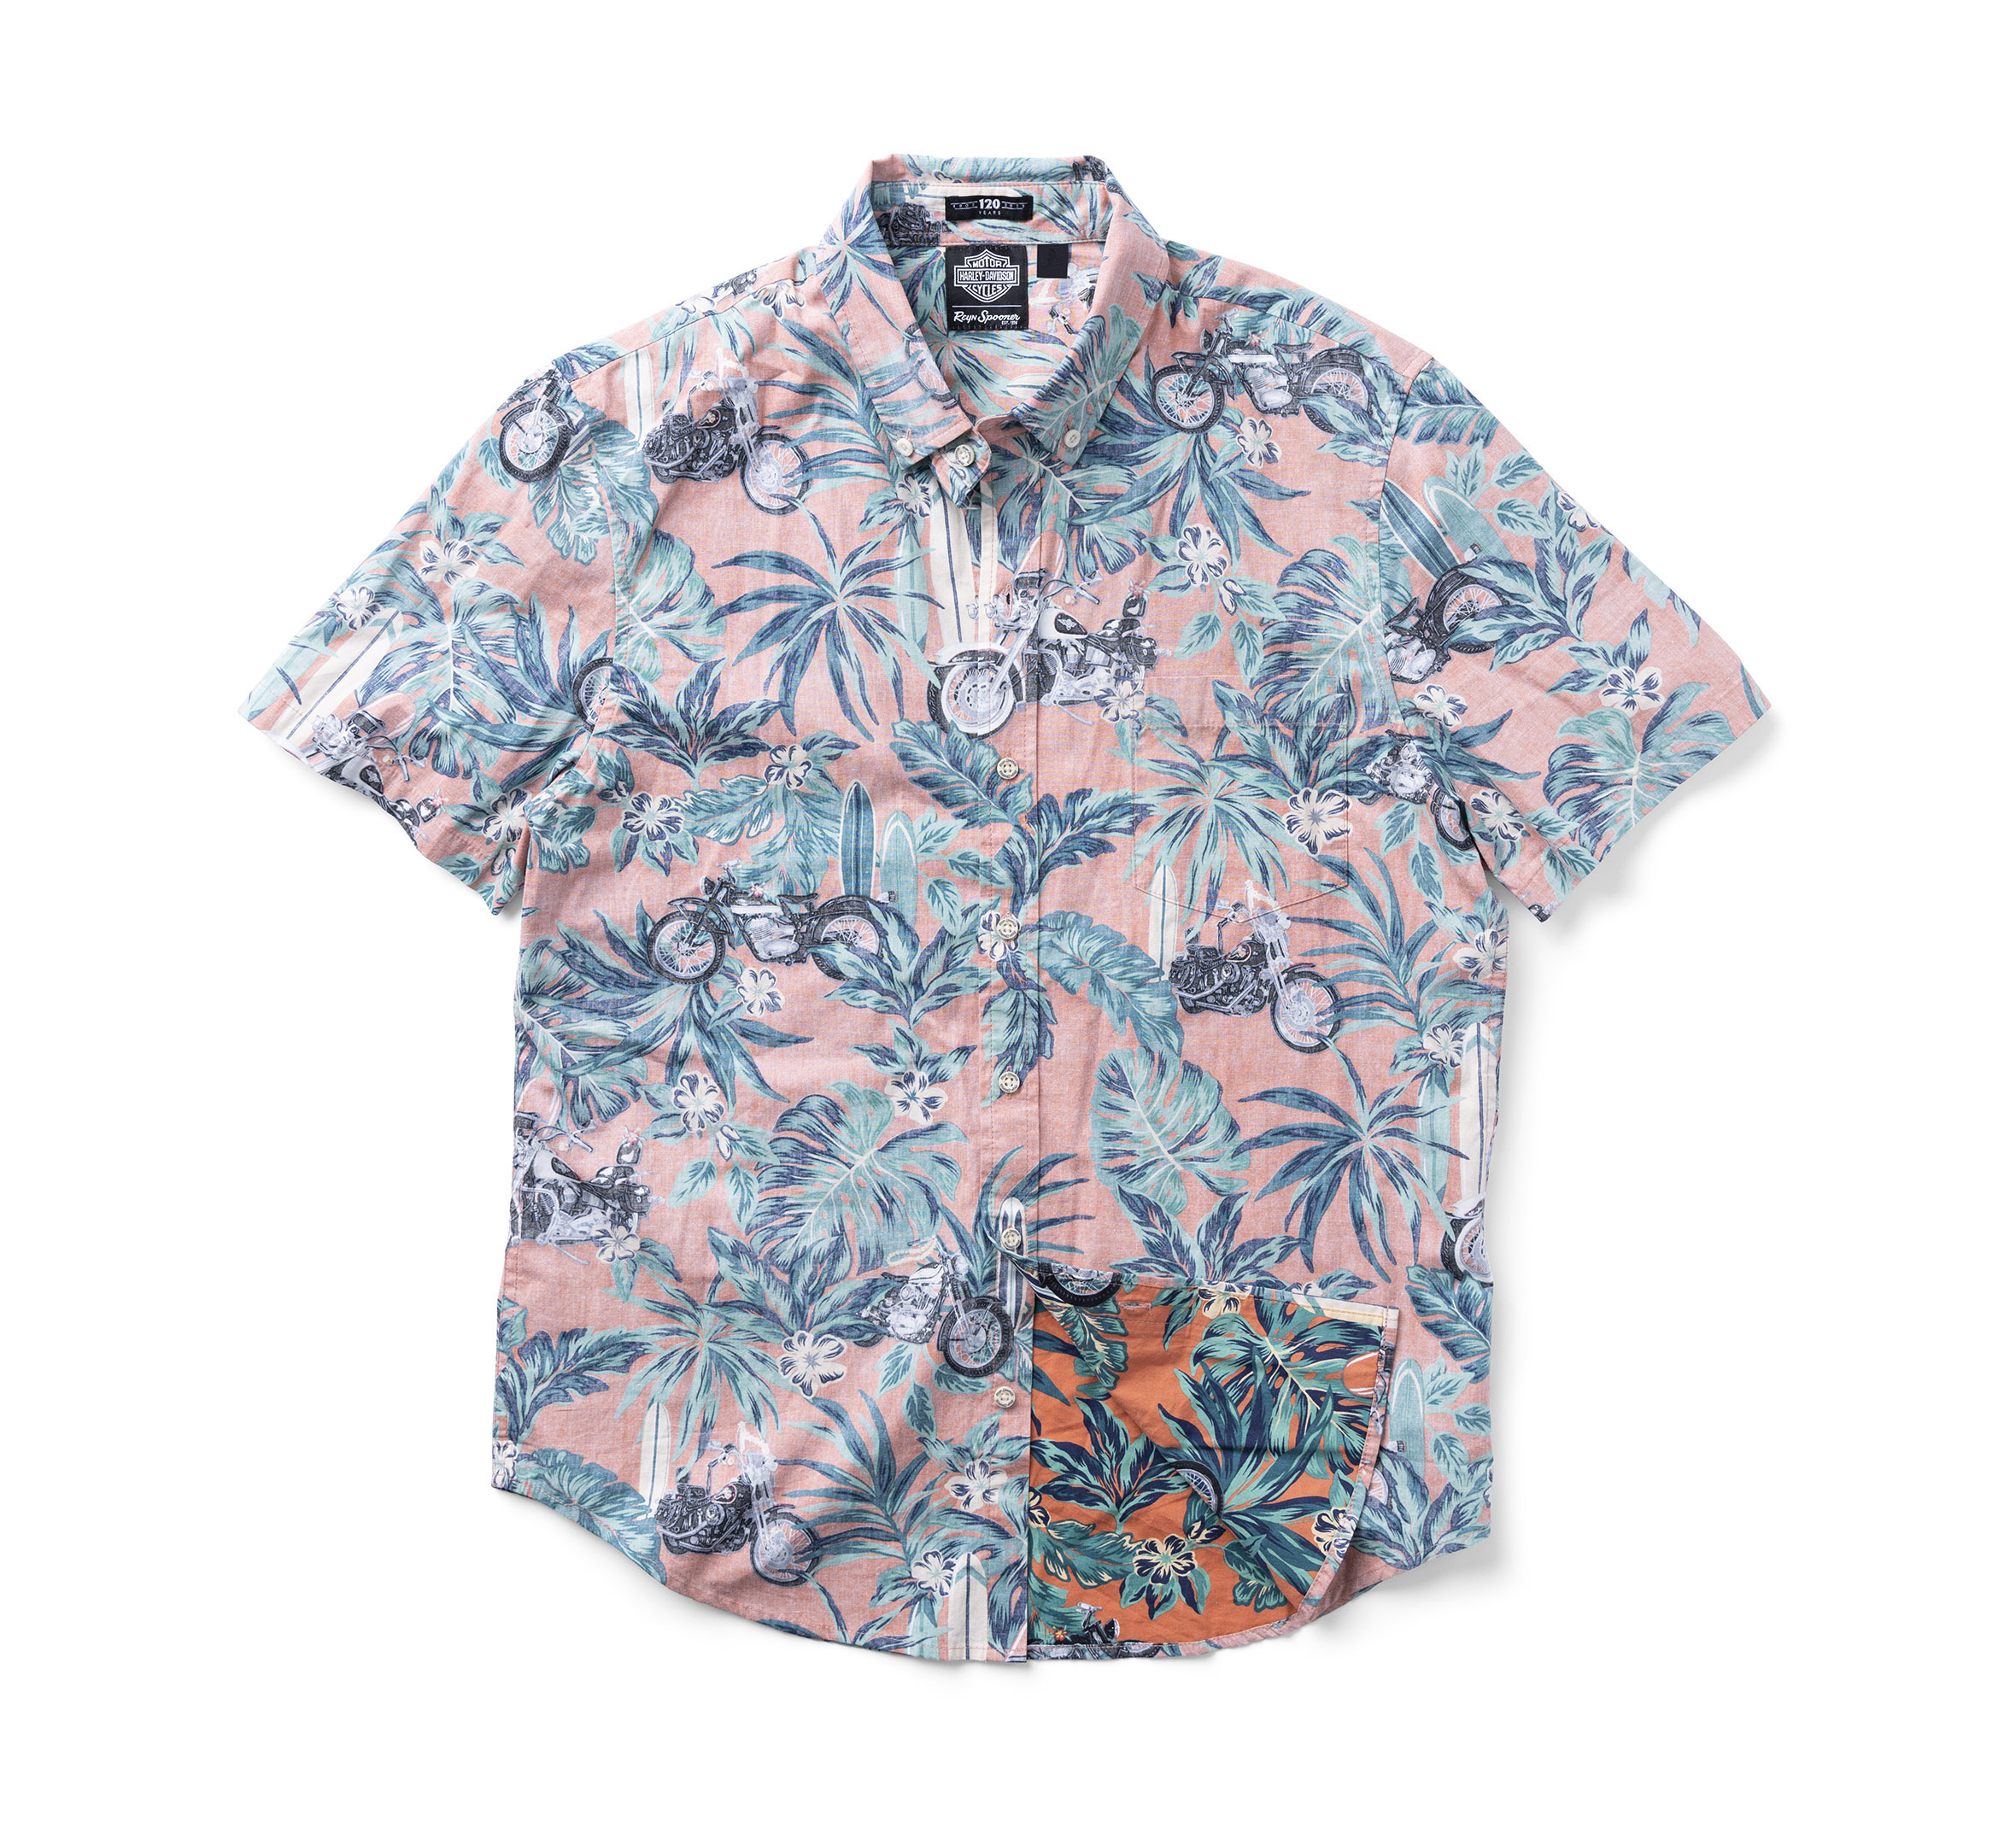 Vintage Reyn Spooner Hawaiian Shirt Size Medium 1990s Made in Hawaii